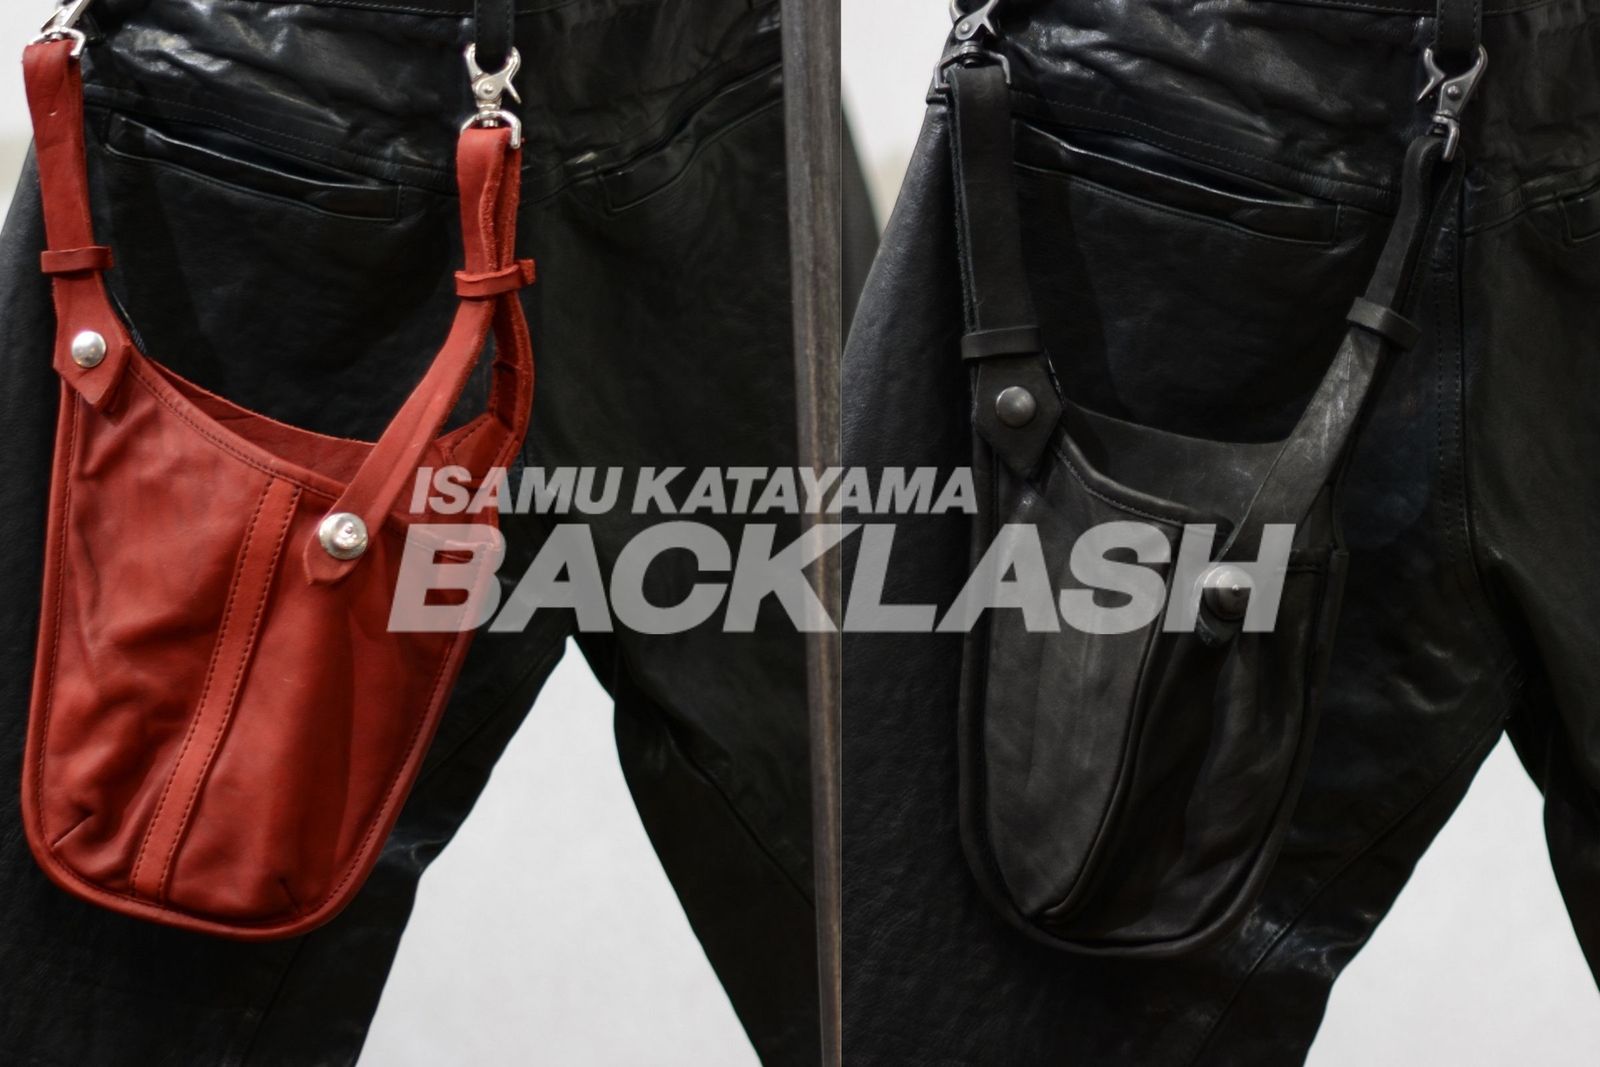 ISAMUKATAYAMA BACKLASH 【財布やスマホなどの収納に便利なウエスト 